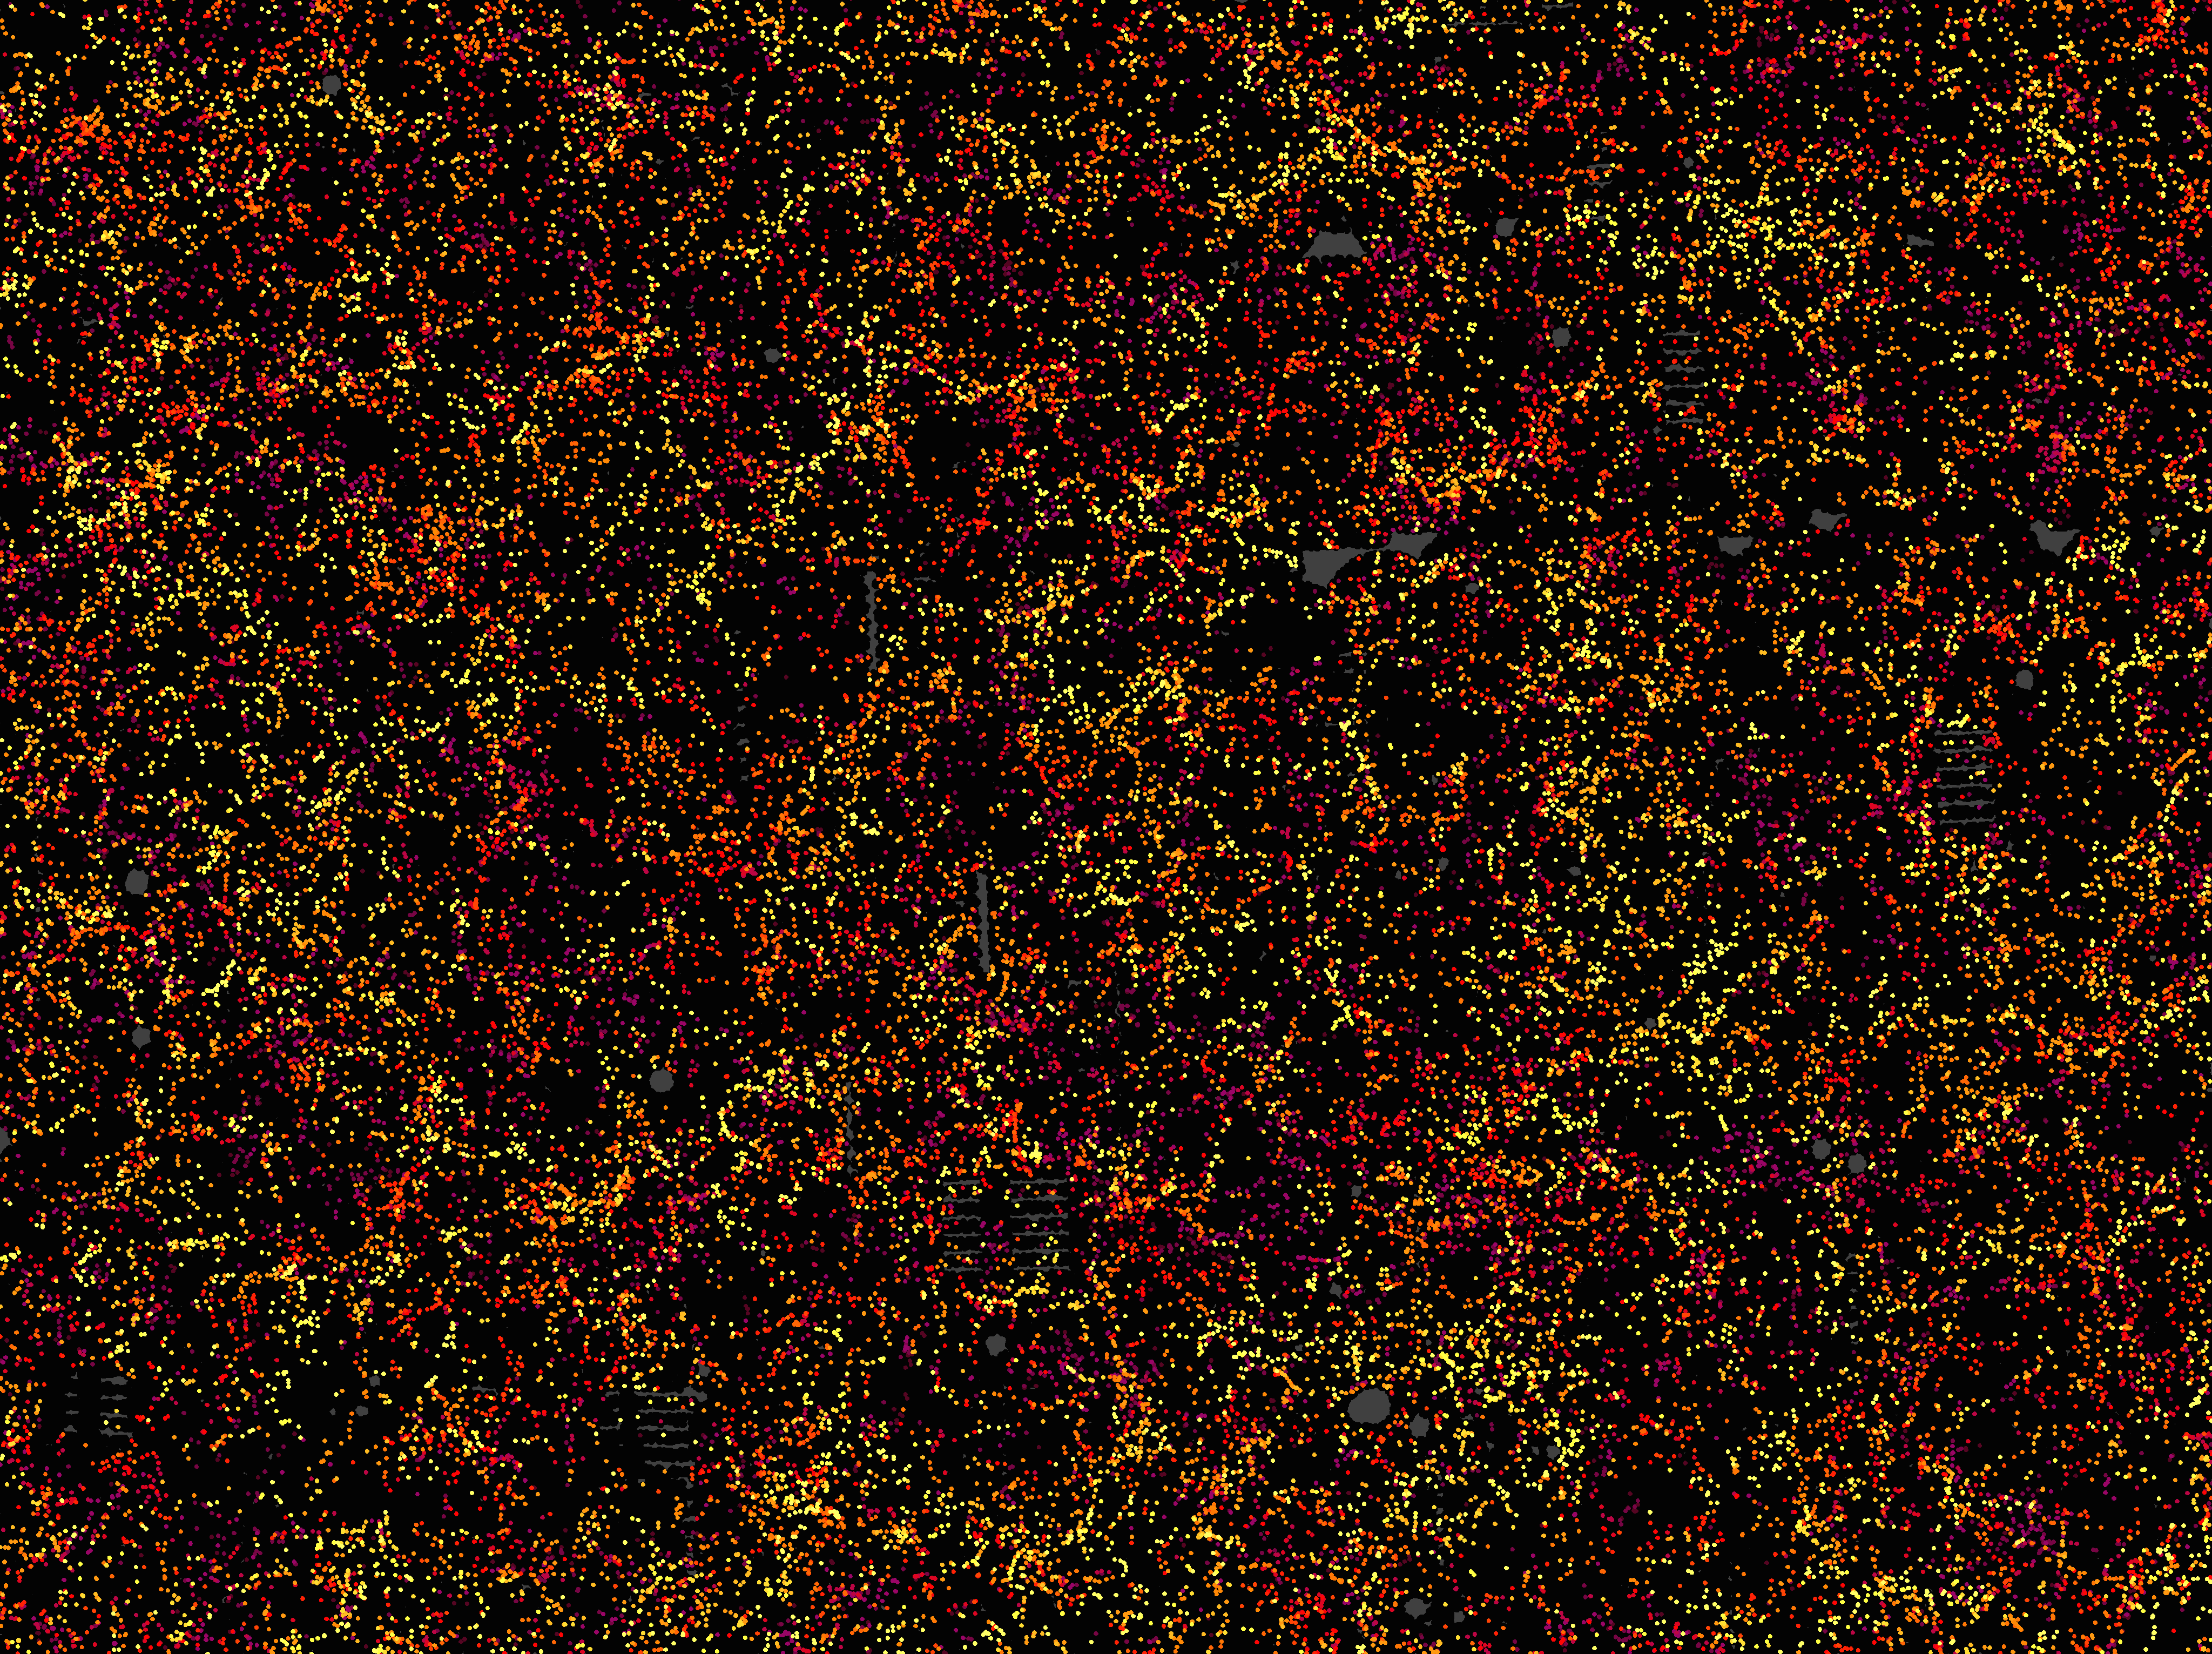 Il y a 48 741 galaxies dans ce petit coin de ciel